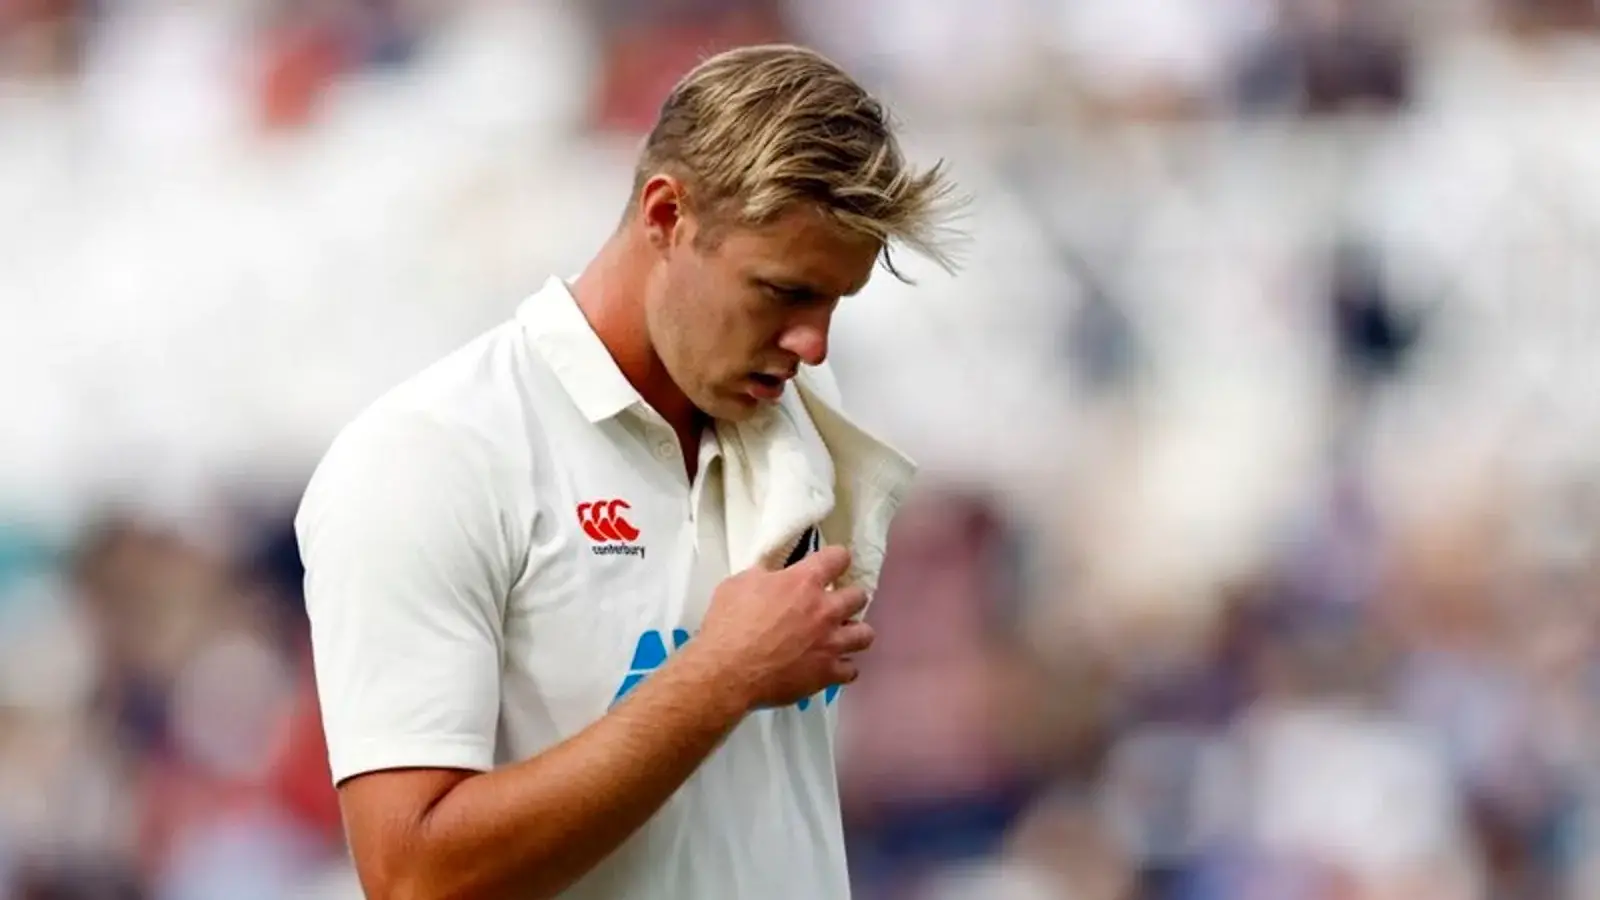  न्यूजीलैंड के काइल जैमीसन पीठ की चोट के कारण इंग्लैंड के तीसरे टेस्ट से बाहर हो गए |  क्रिकेट
